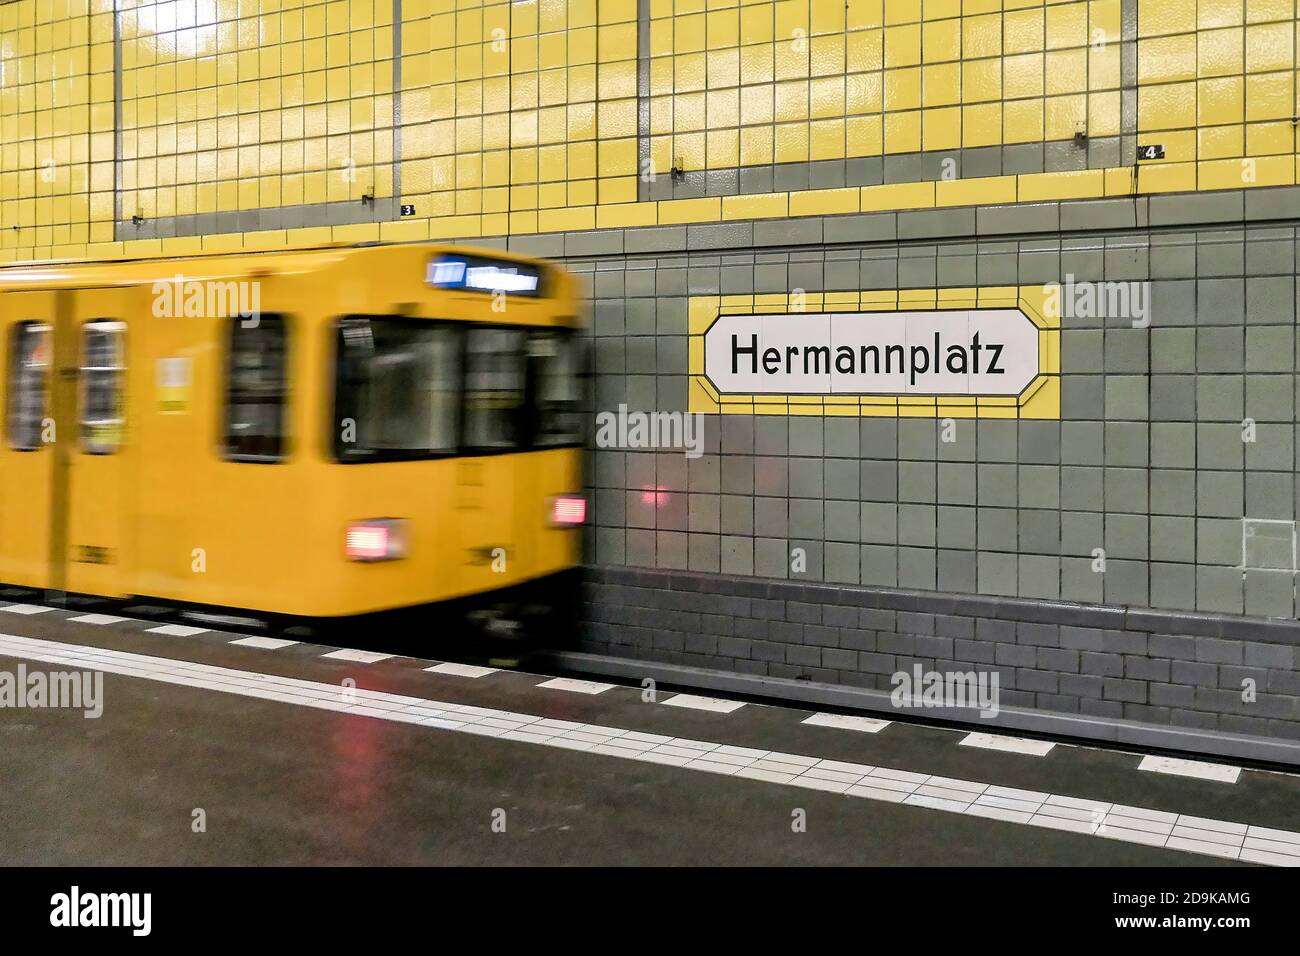 Stazione della U-Bahn Hermannplatz, U7, Bahnsteig, BVG, oeffentlicher Nahverkehr, Berlino Foto Stock